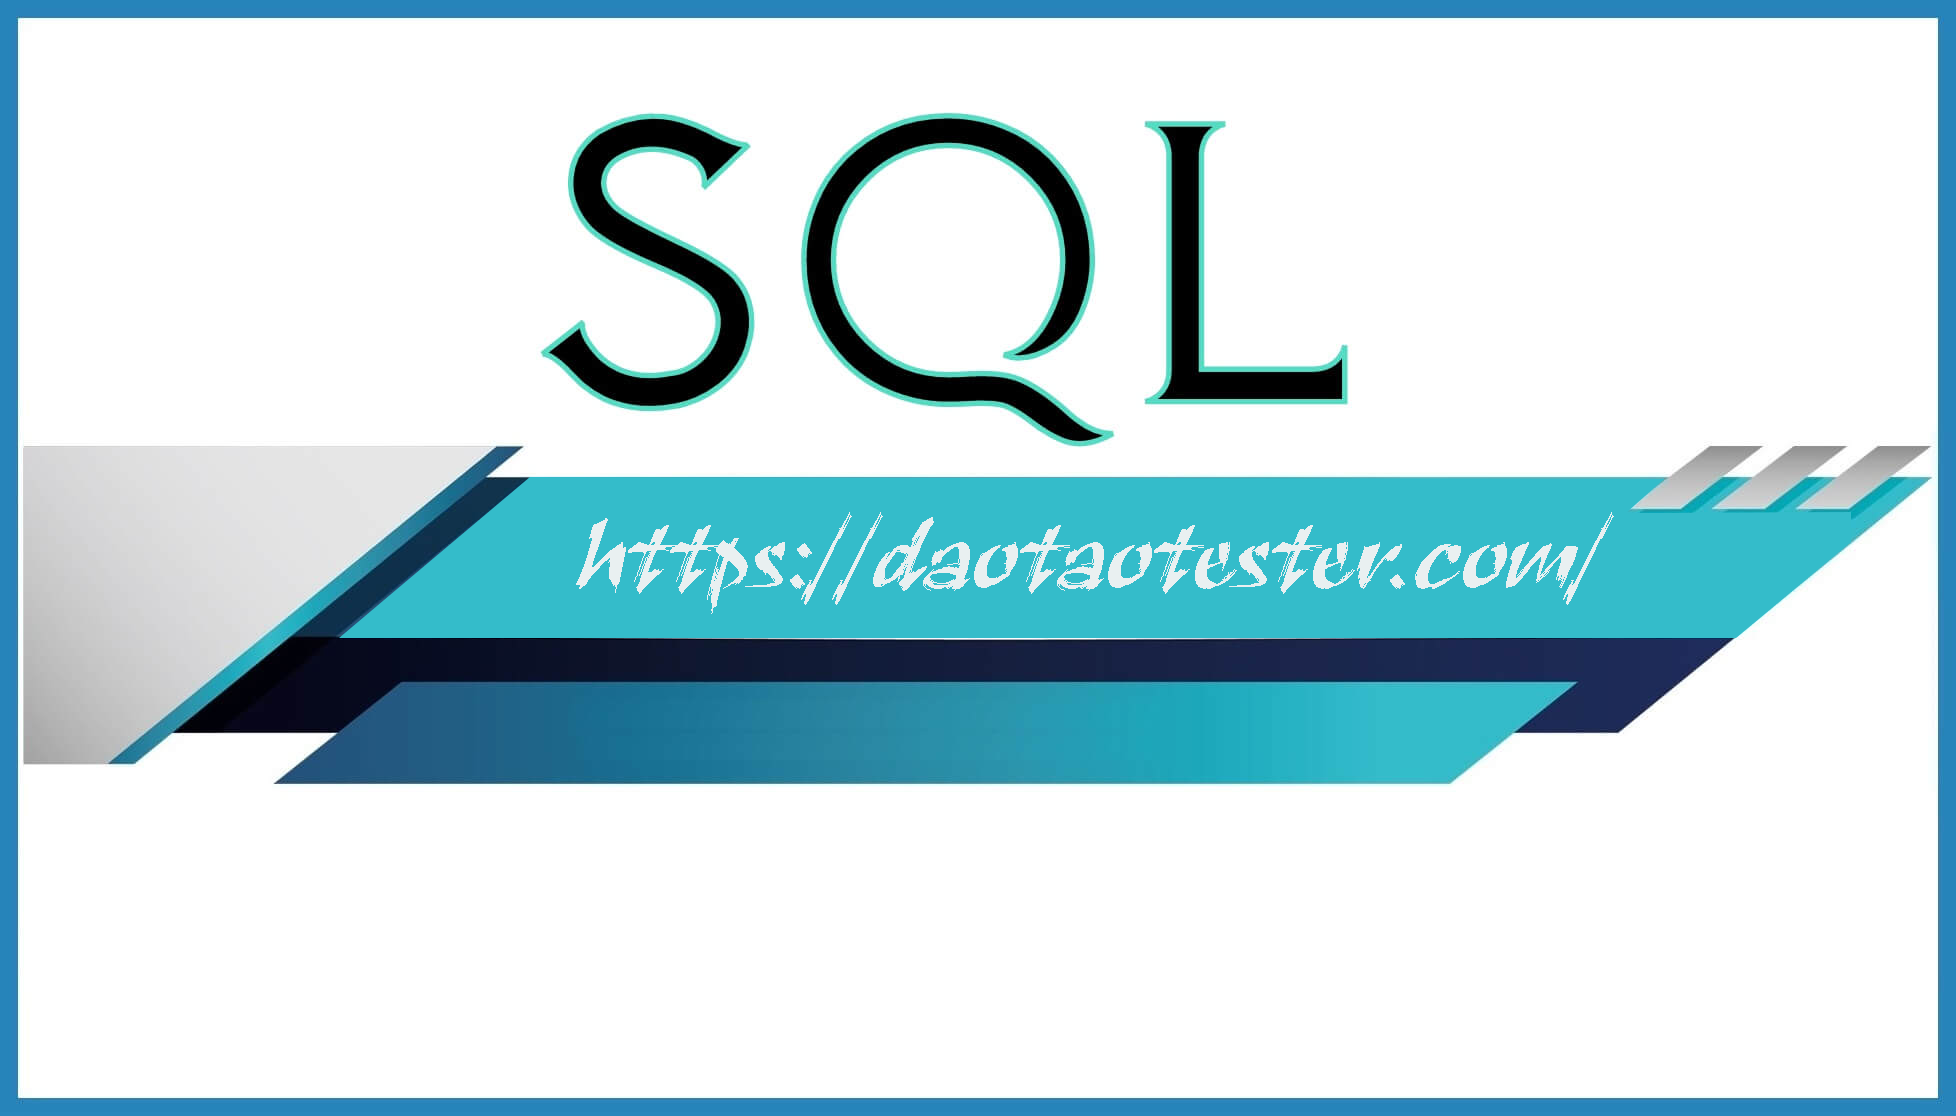 Tầm quan trọng của SQL đối với Tester